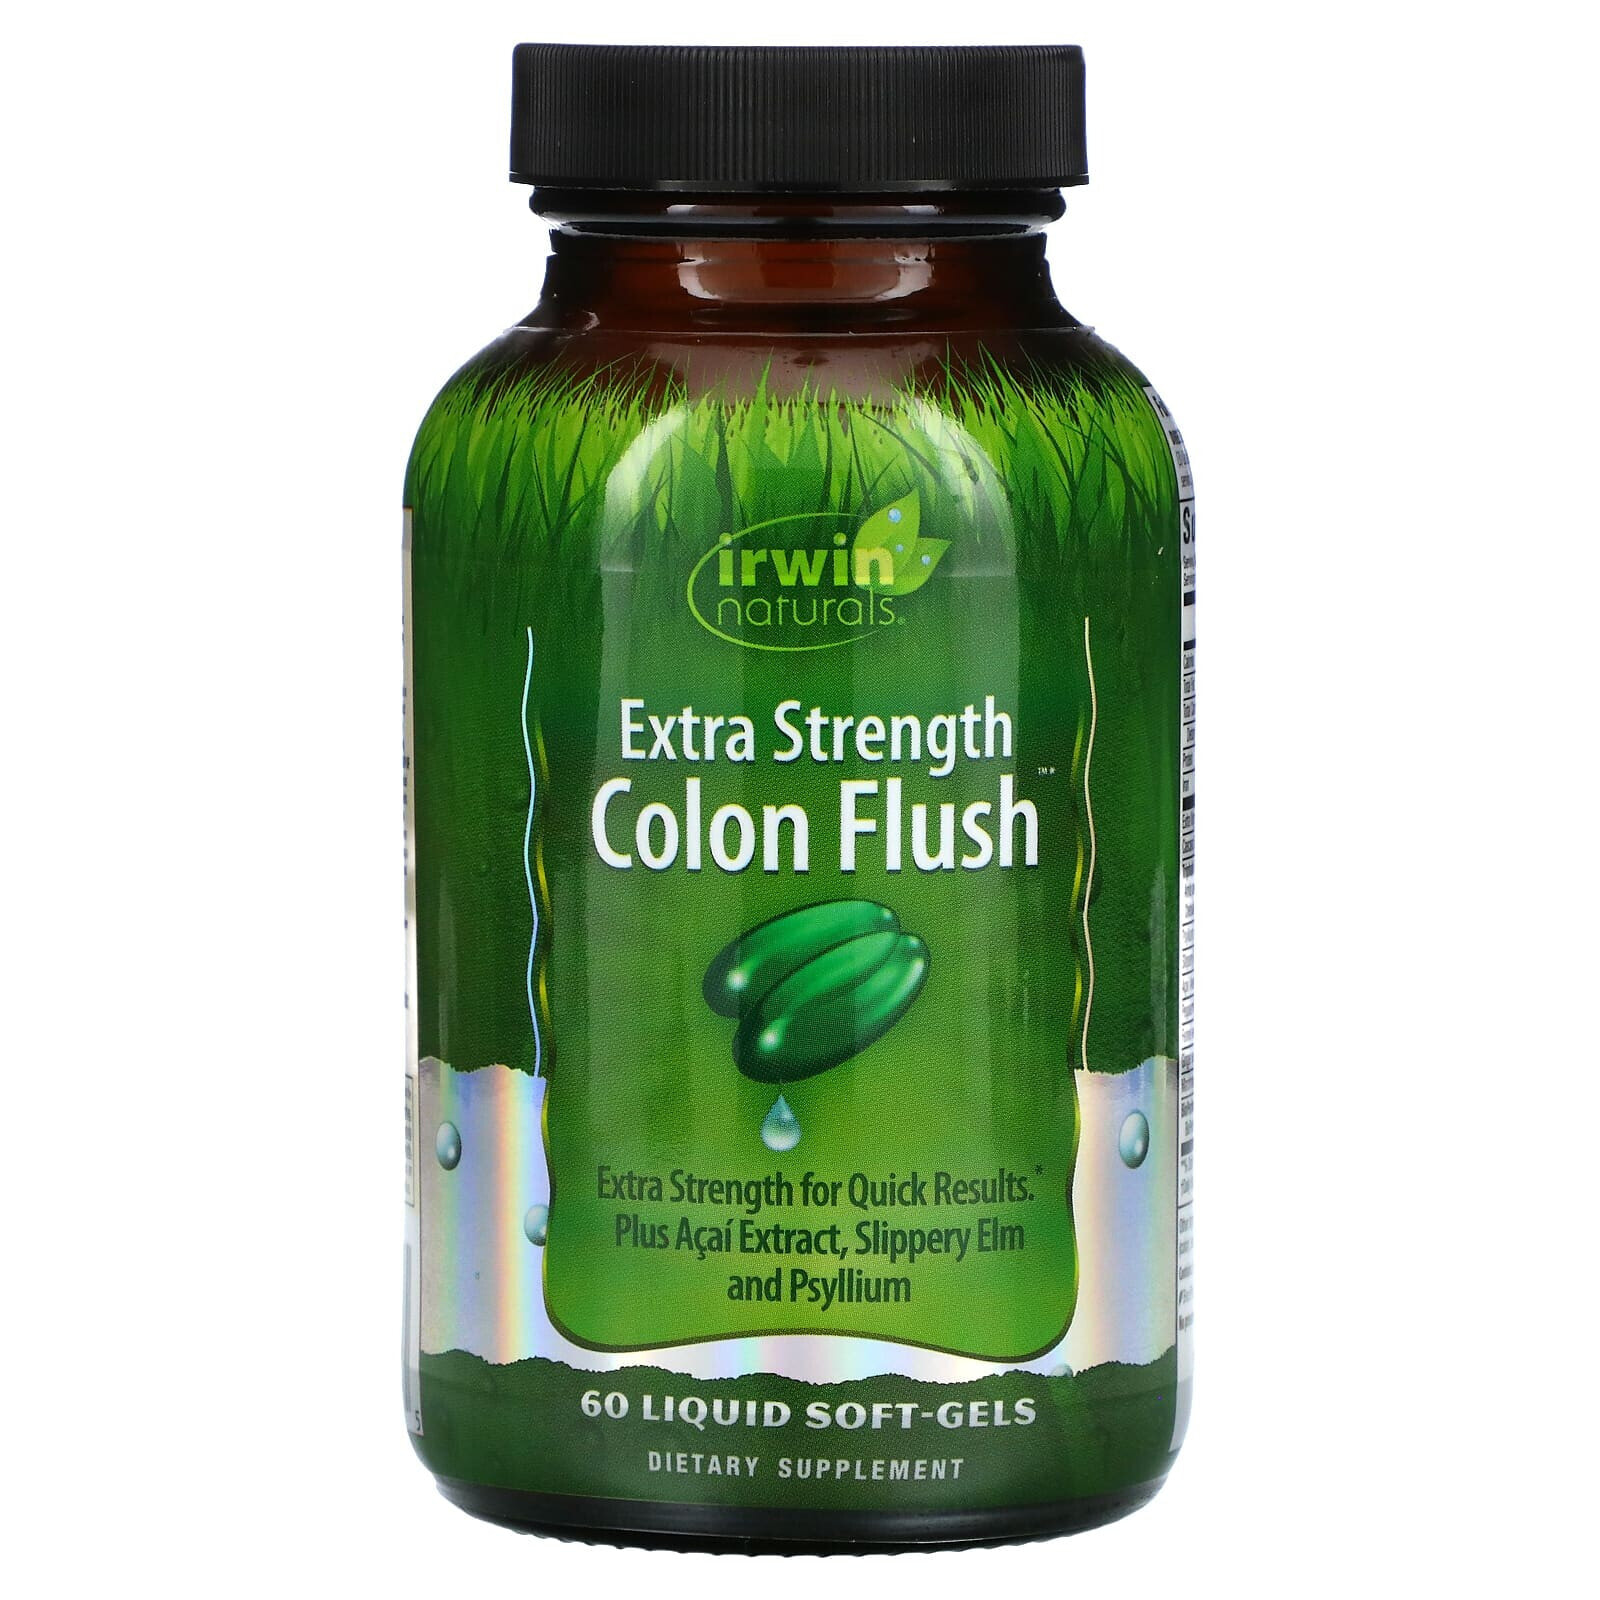 Extra Strength Colon Flush, 60 Liquid Soft-Gels